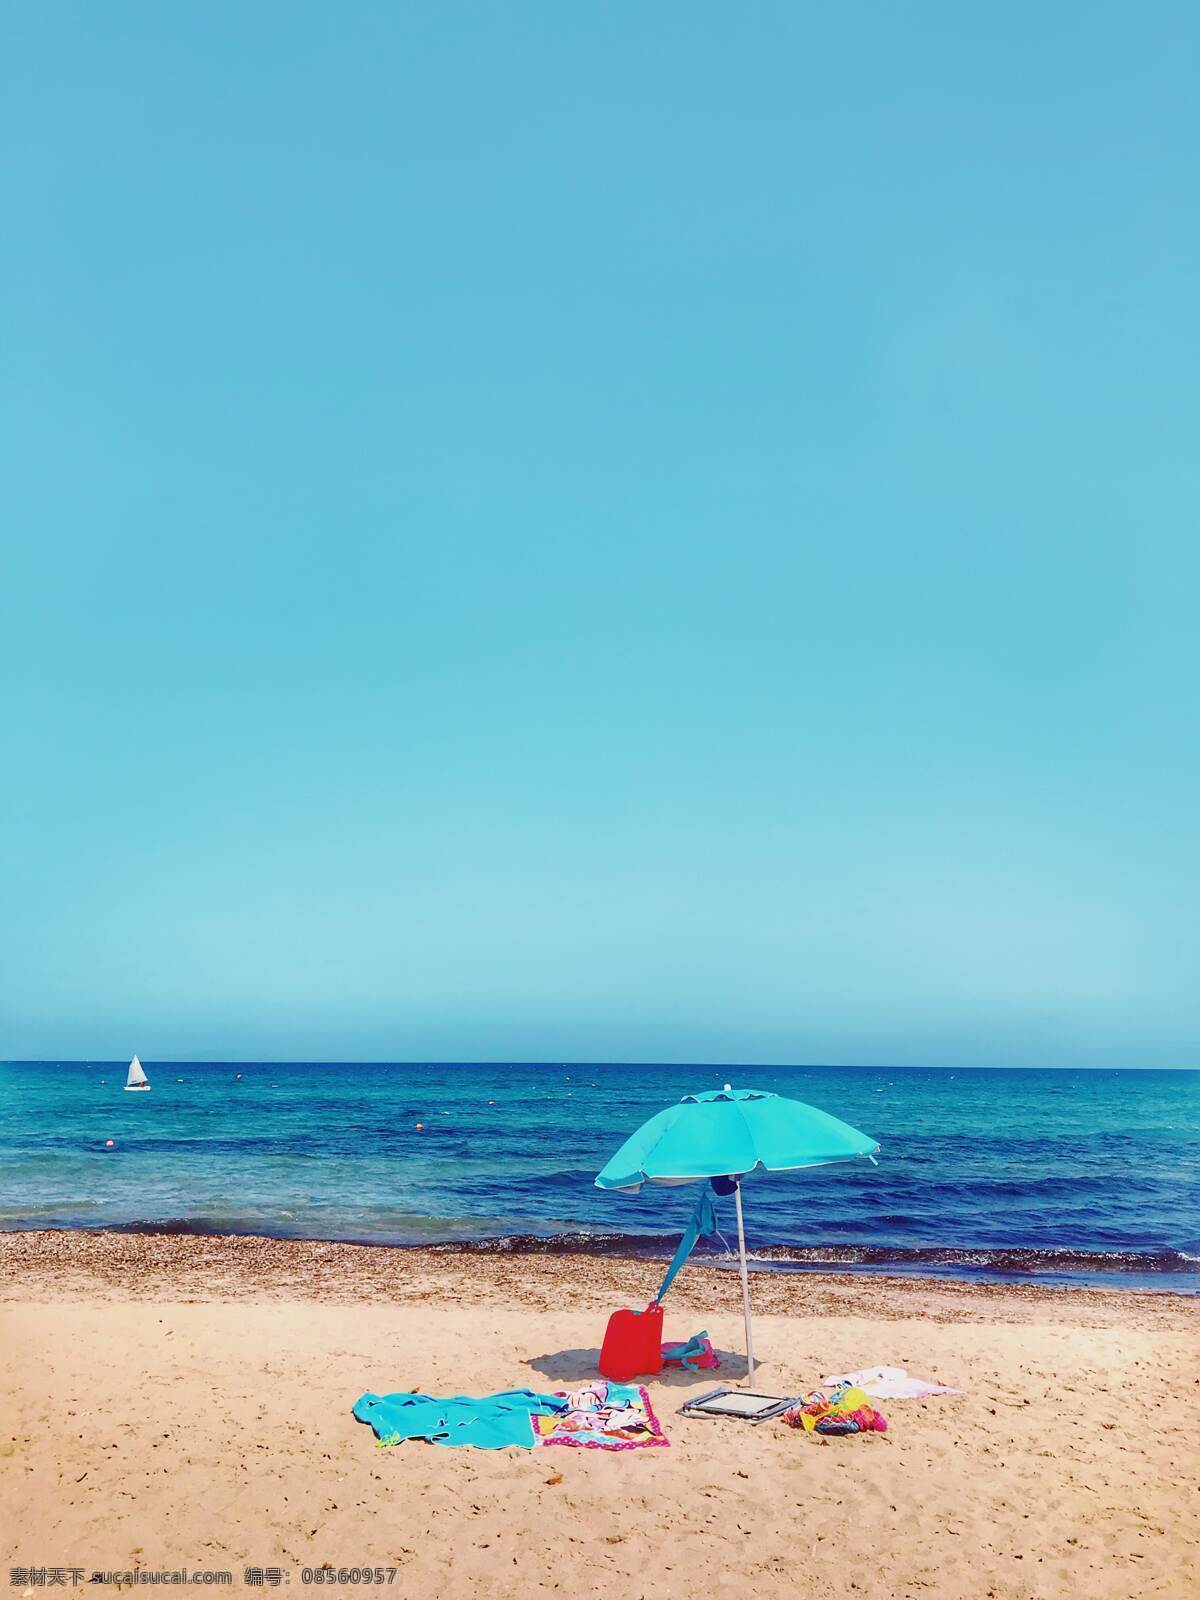 海边图片 海边 海岸线 沙滩 黄沙 海浪 大浪 风浪 浪花 礁石 太阳伞 遮阳伞 天空 云朵 景色 美景 风景 自然景观 自然风景